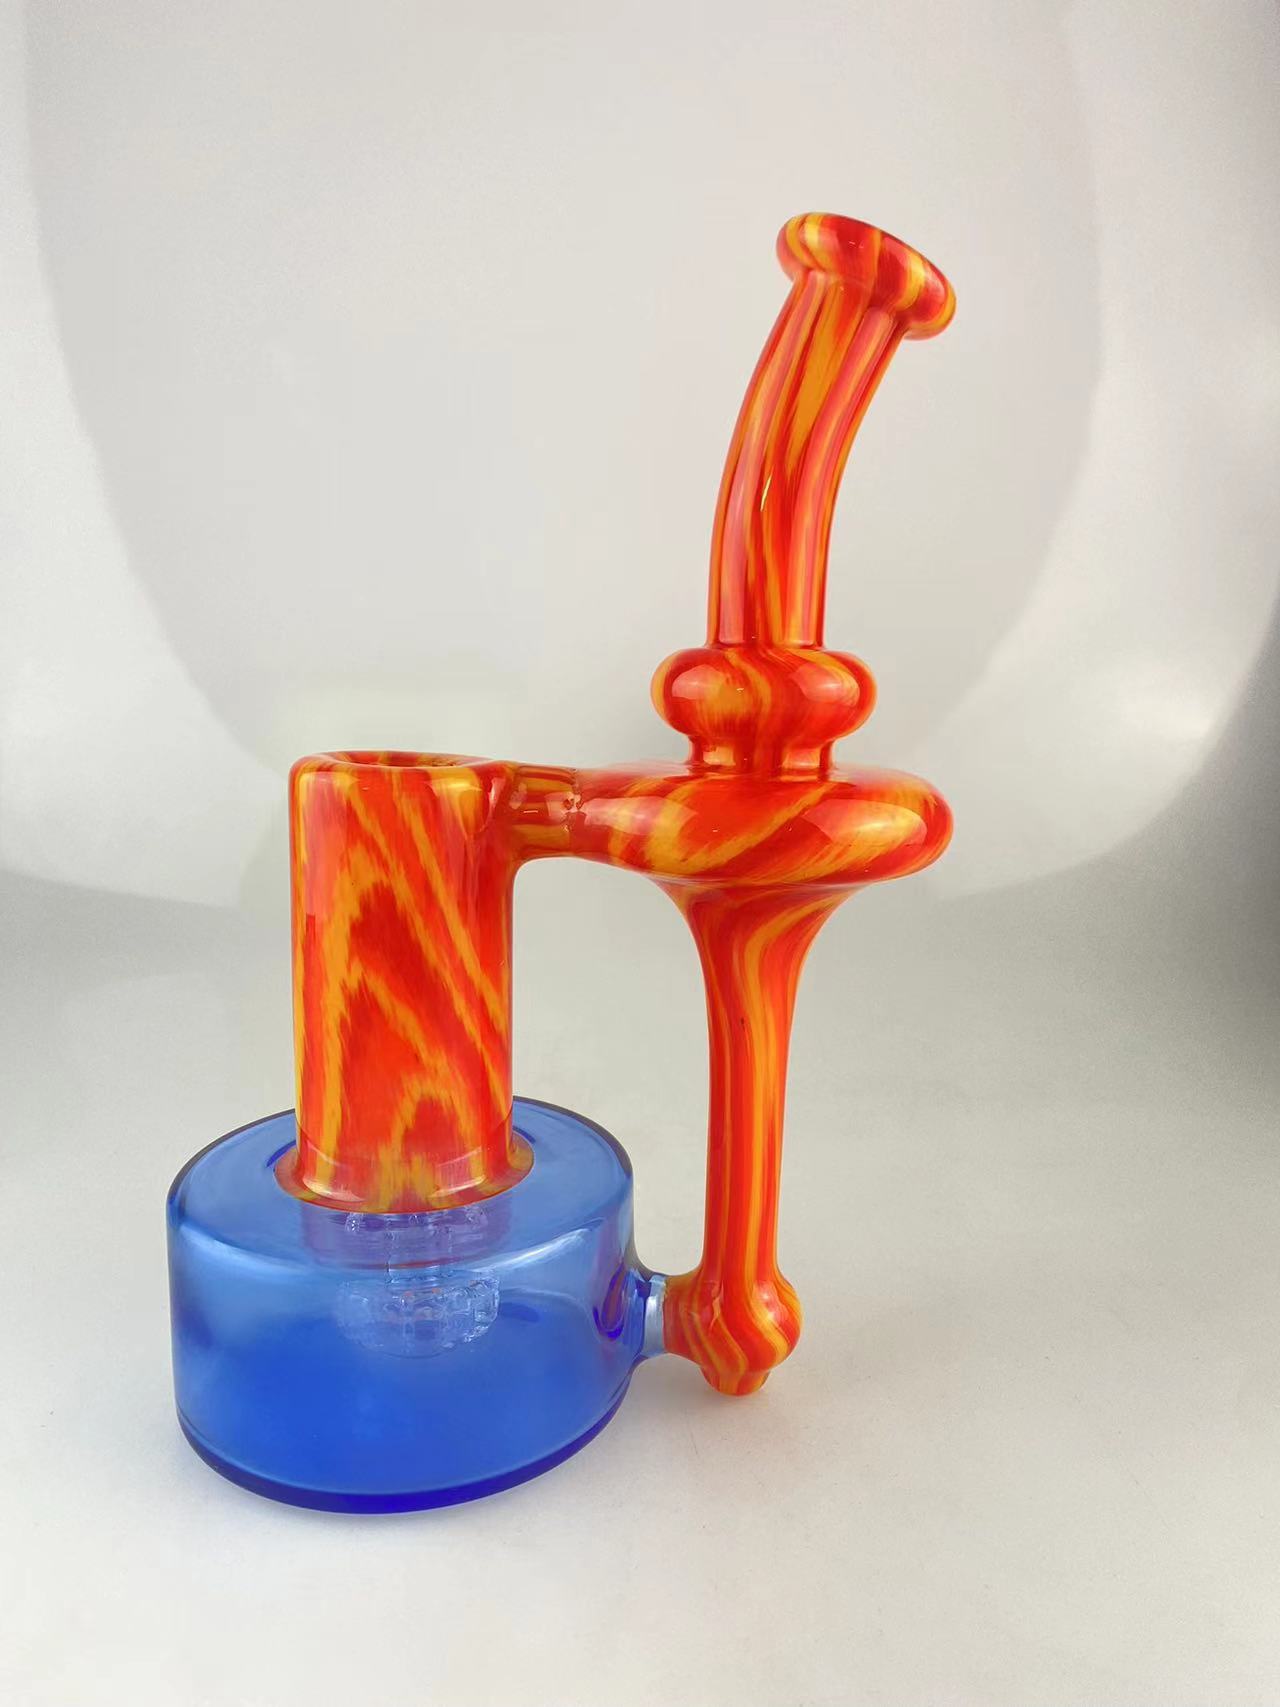 Pipe fumatori RBR colorate con arancione fuoco e fiori di cobalto, giunto da 14 mm dal design accattivante, gradite su ordinazione